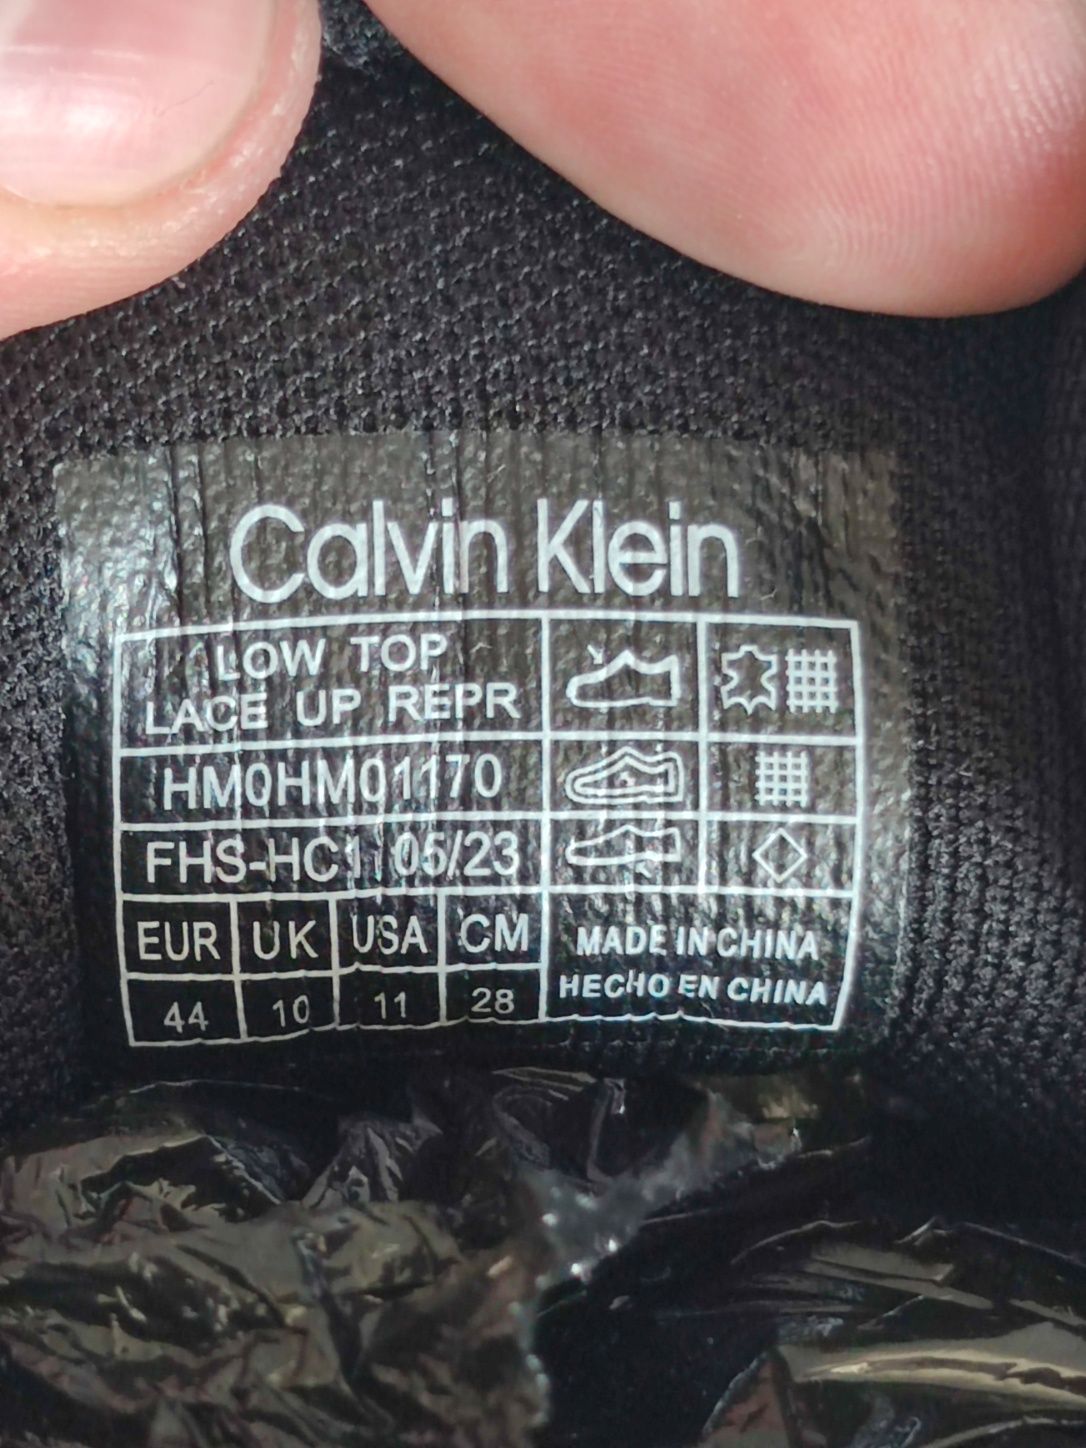 ОРИГИНАЛ 100% Новые! Calvin Klein мужские кроссовки, кеды р44-45 бренд